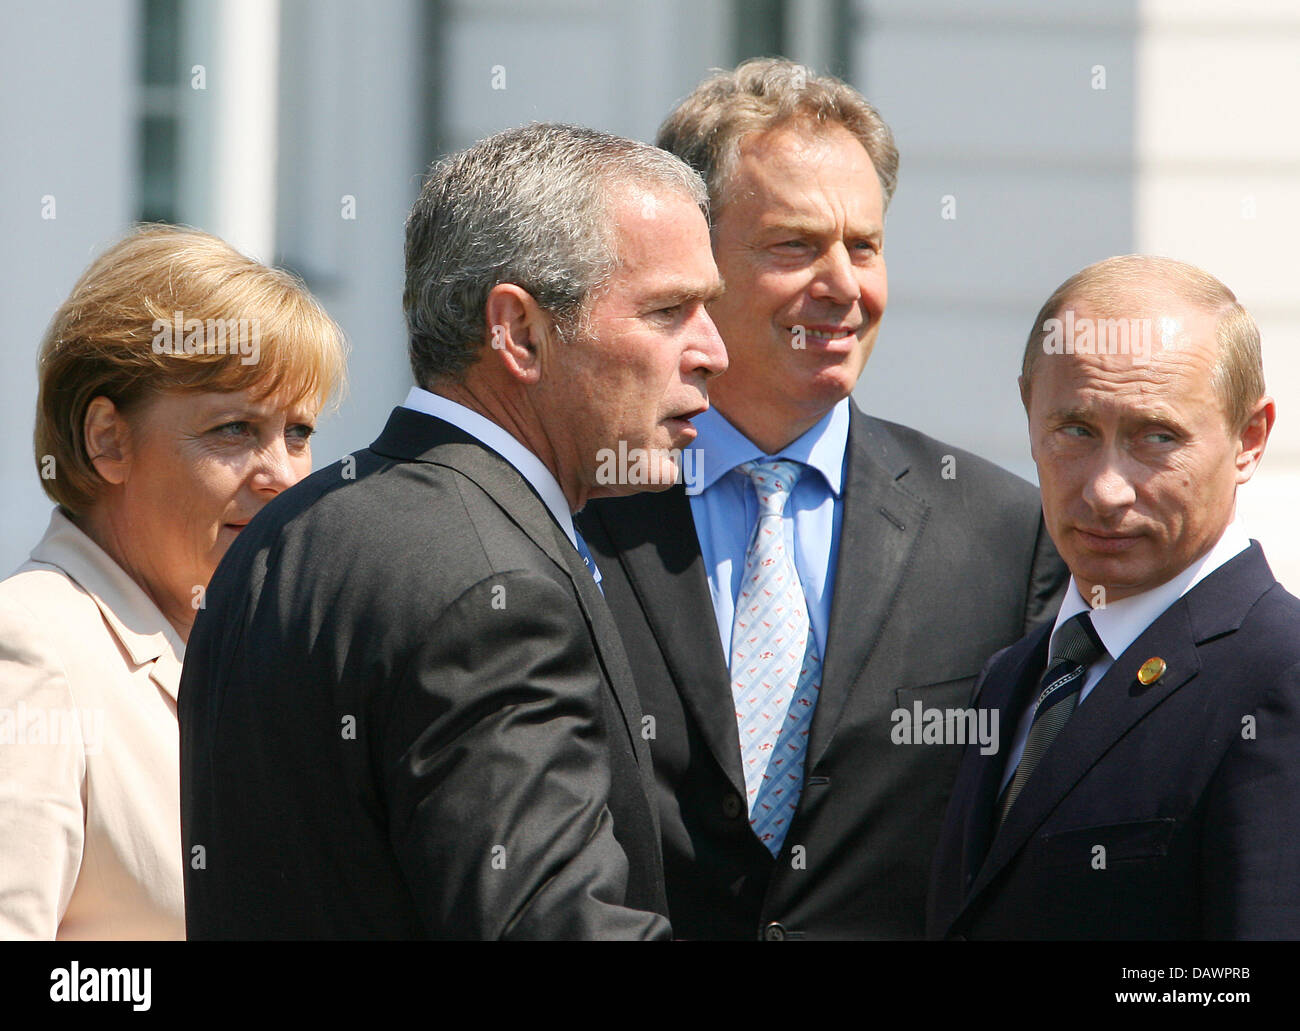 (L-R) La chancelière allemande, Angela Merkel, le président américain George W. Bush, le Premier ministre britannique Tony Blair et le président russe Vladimir Poutine en photo au sommet du G8 à Heiligendamm, Allemagne, 08 juin 2007. Photo : Boris Roessler Banque D'Images